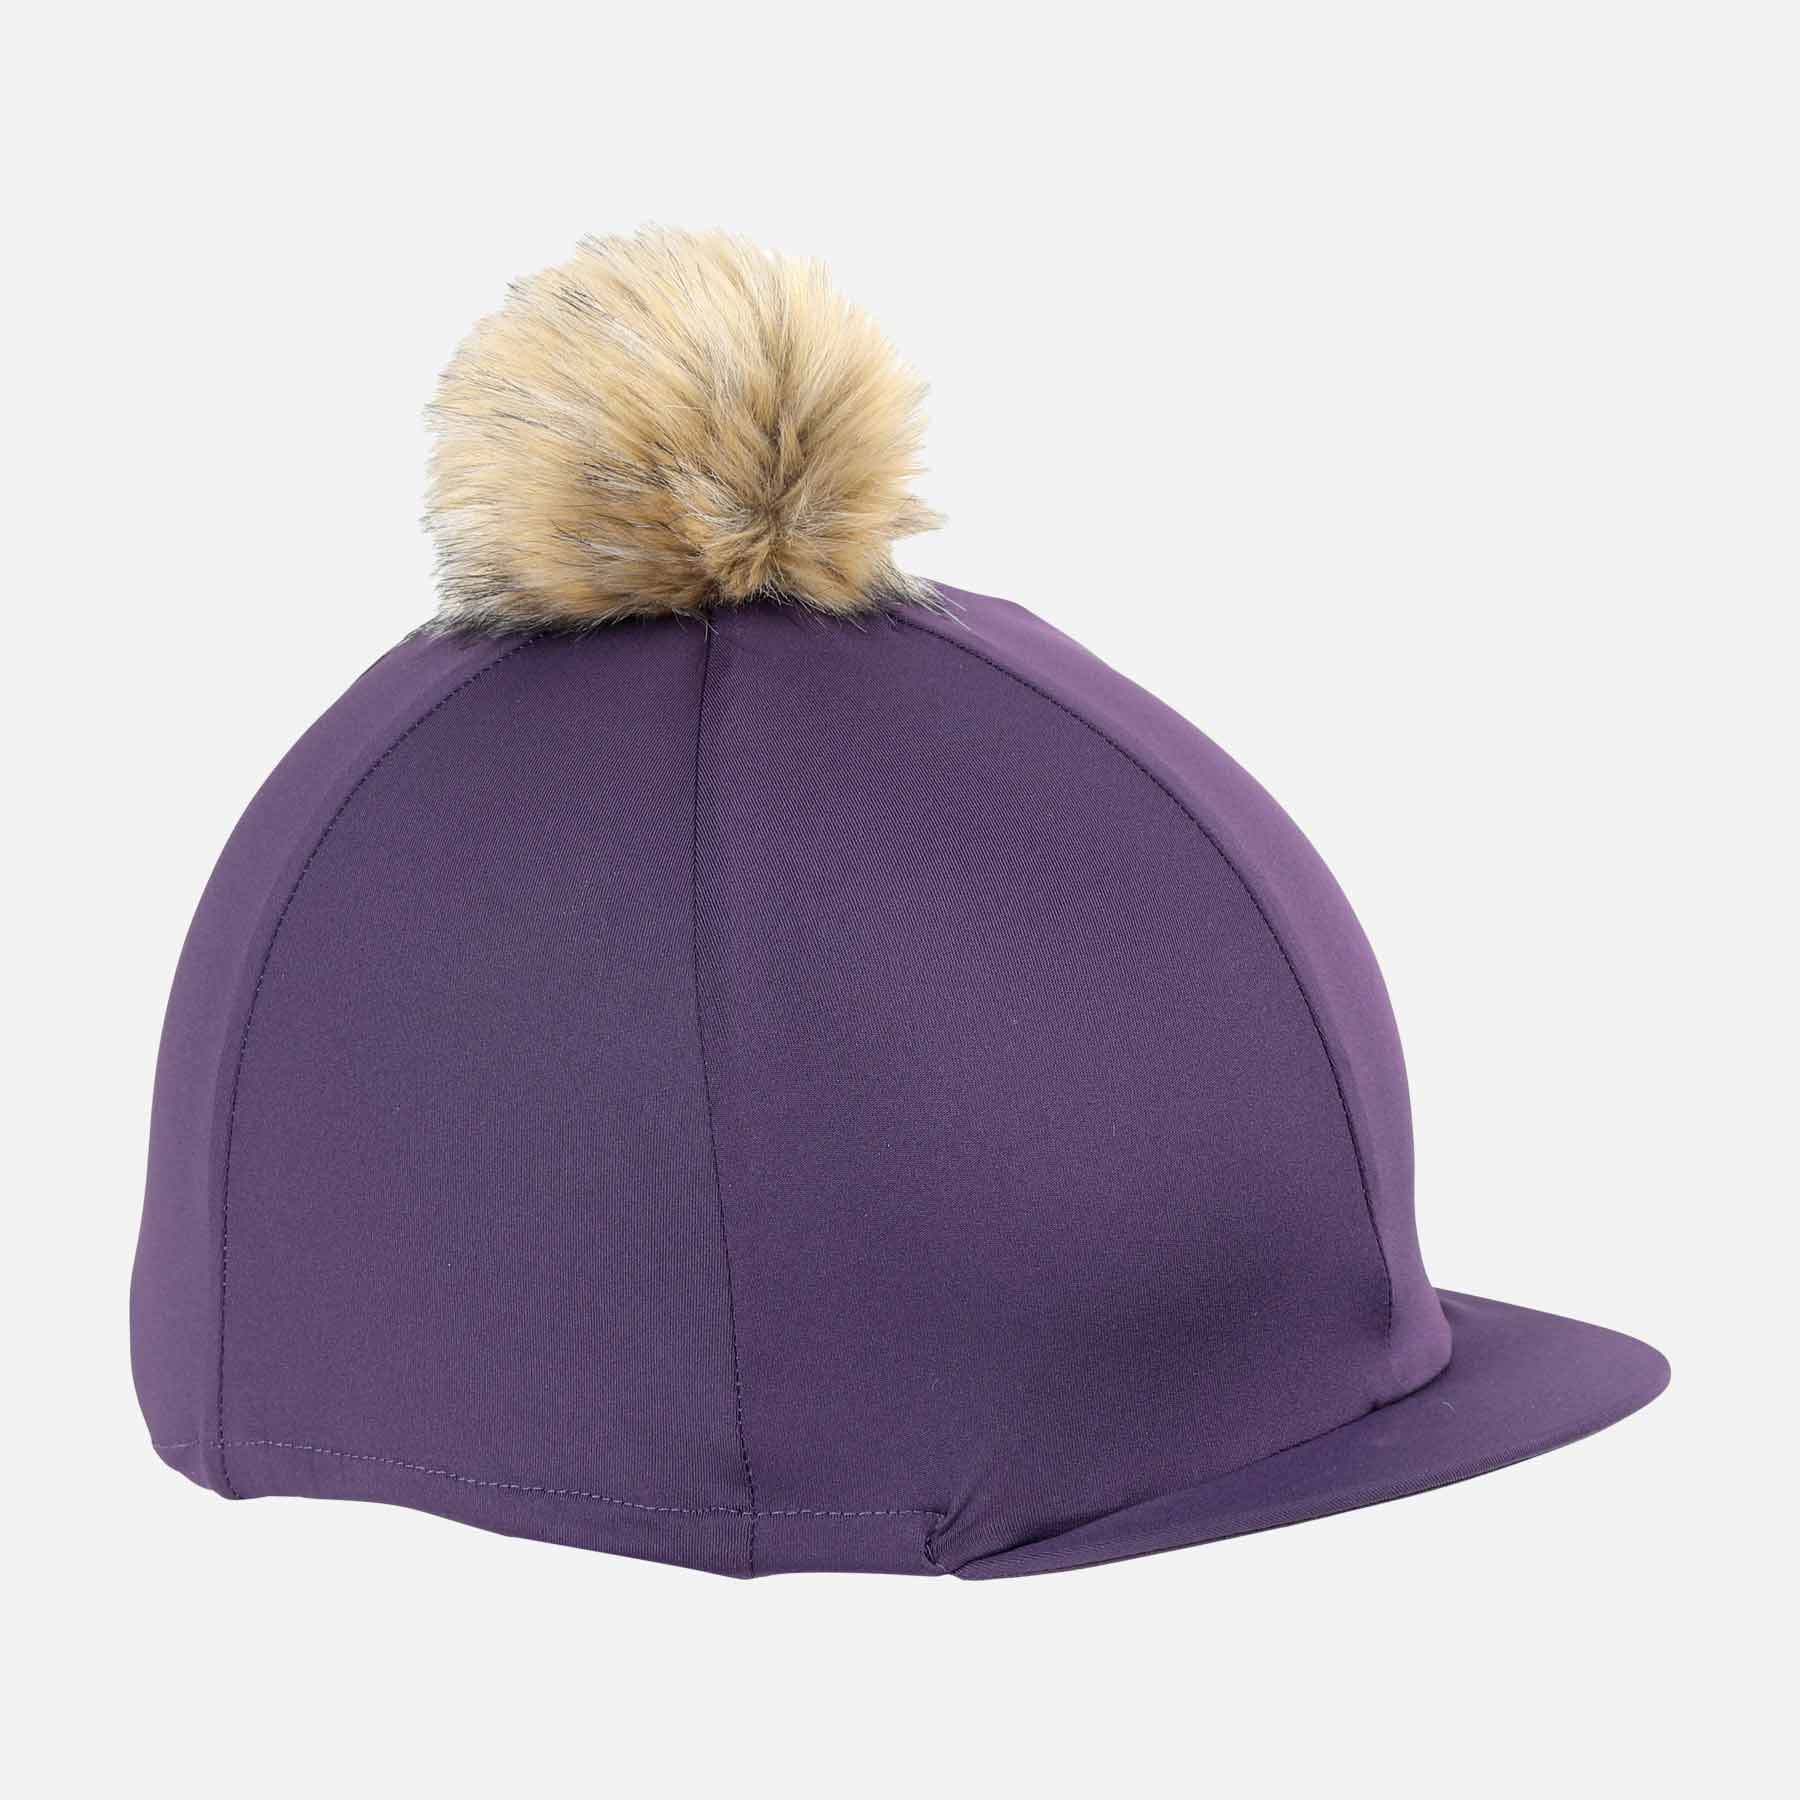 Pom Pom Hat Cover